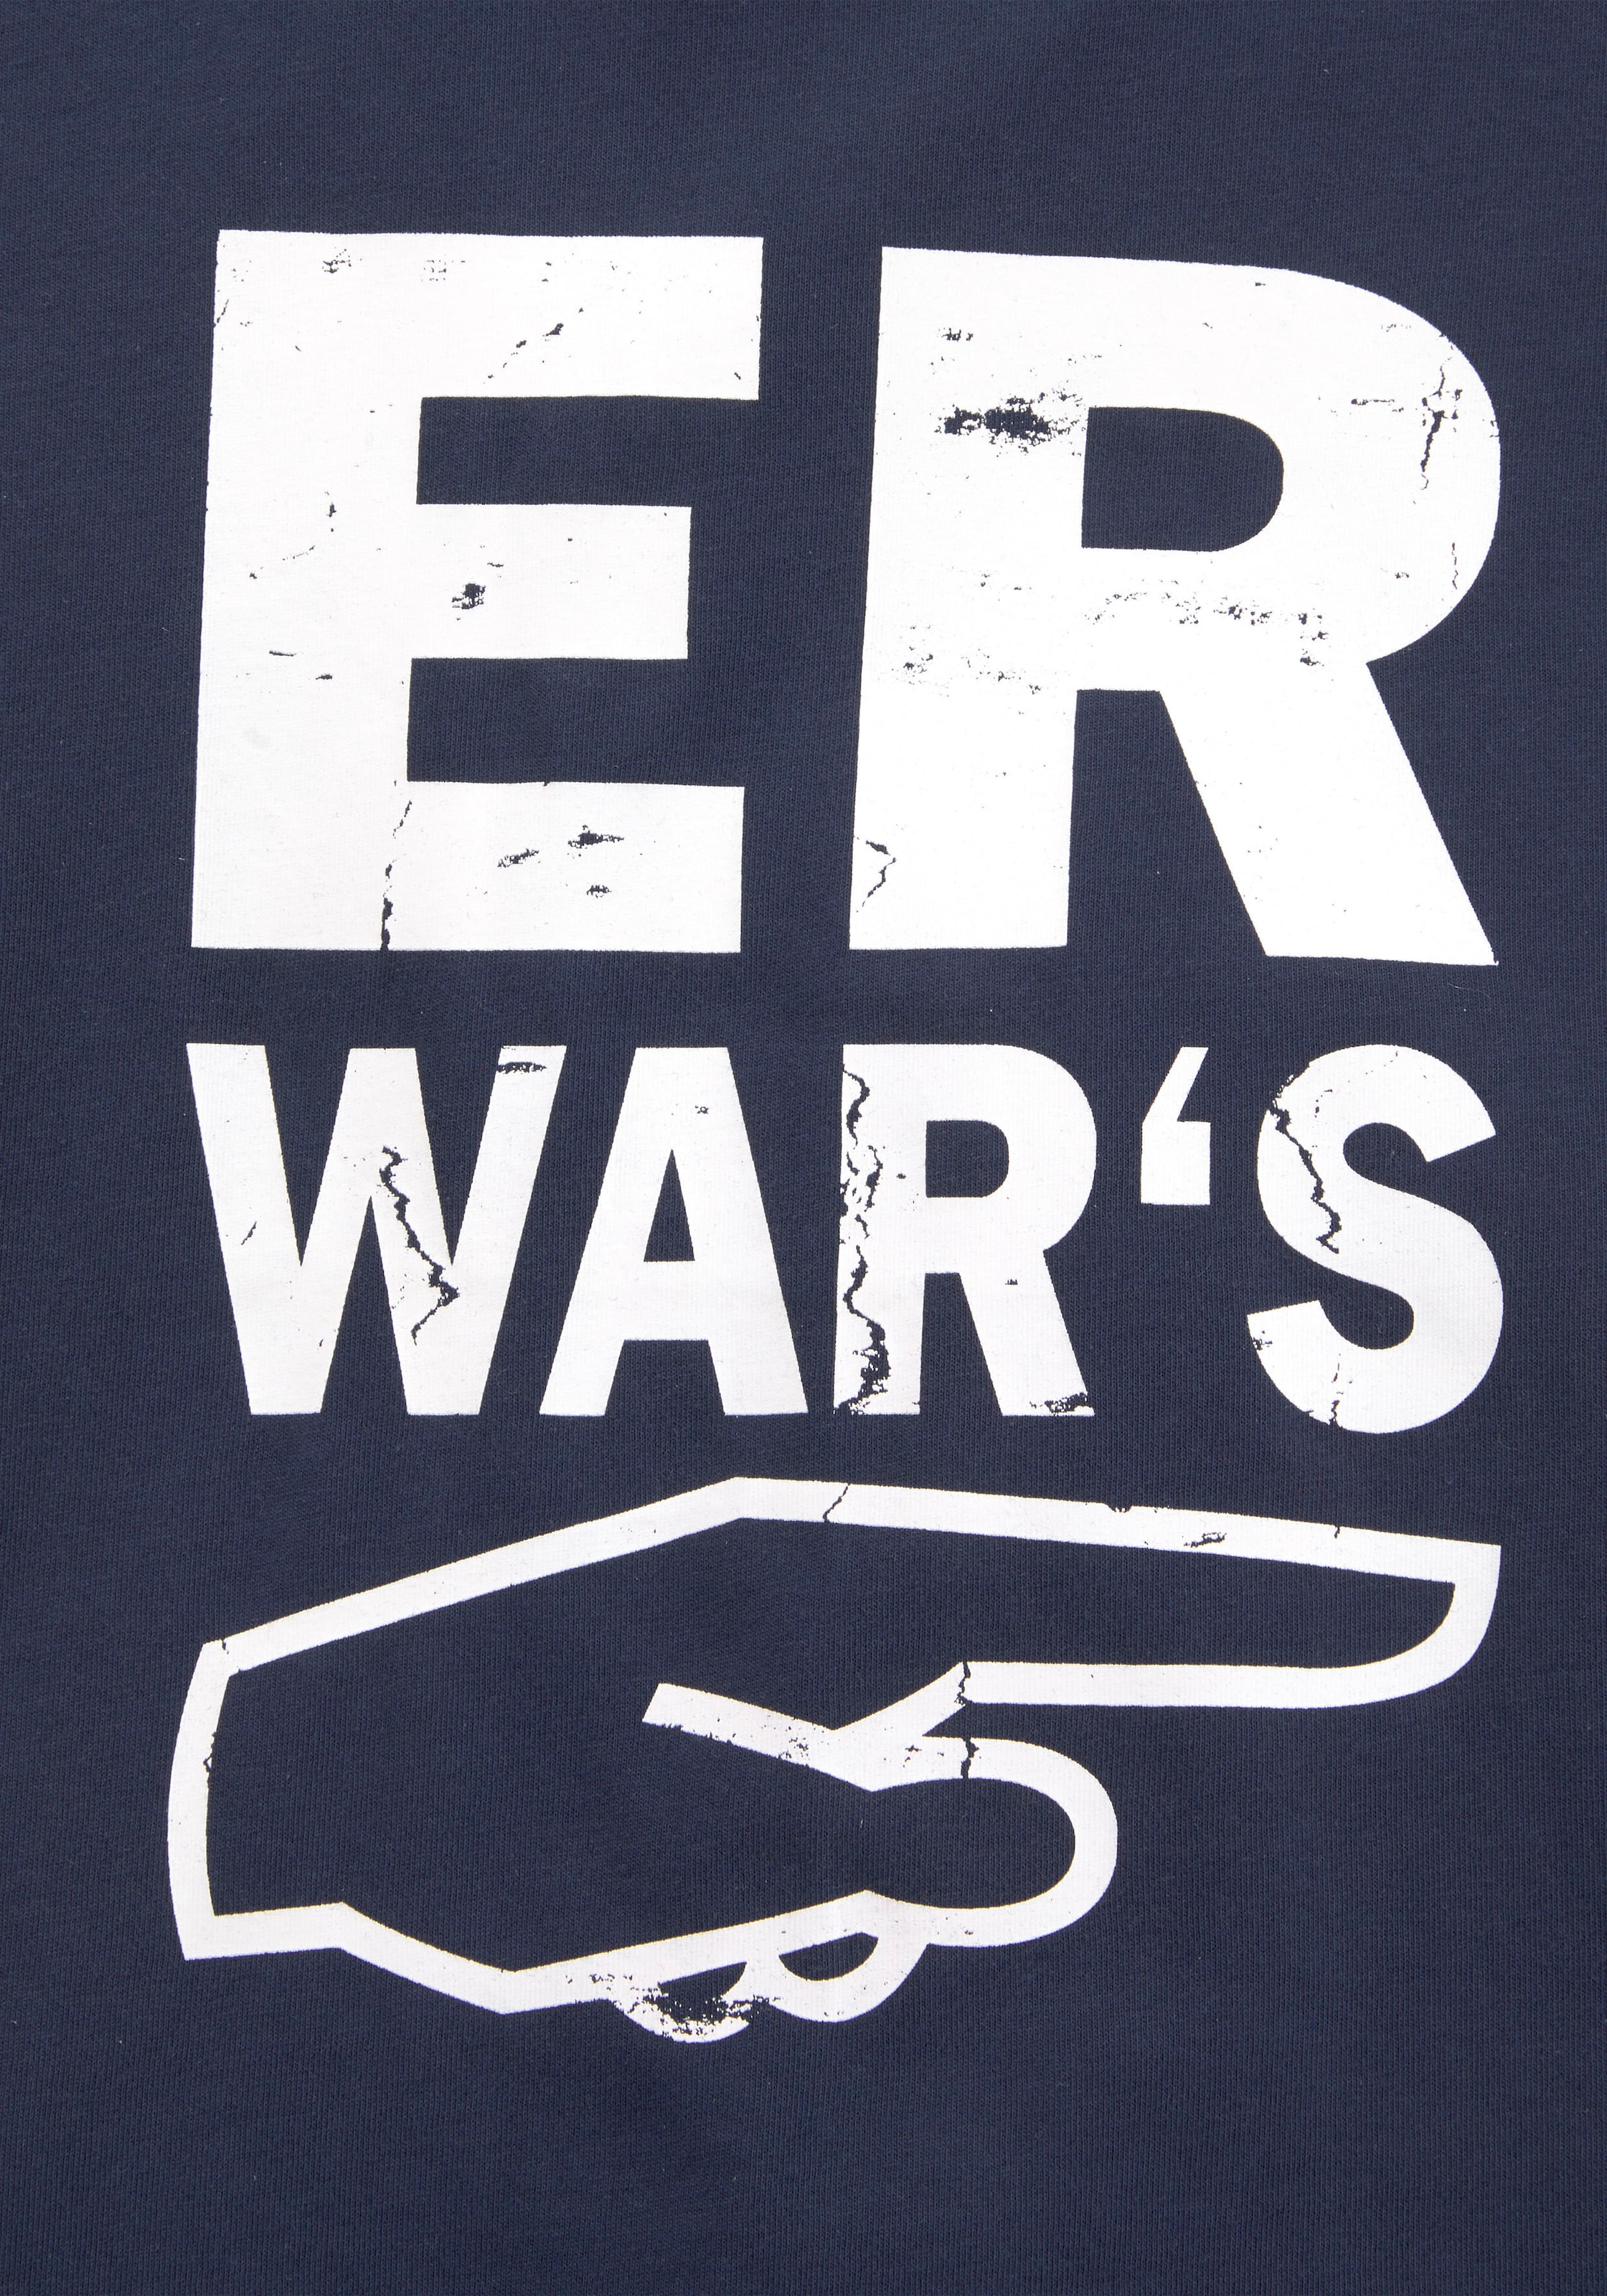 ✌ KIDSWORLD T-Shirt »ER WAR`S«, Spruch Acheter en ligne